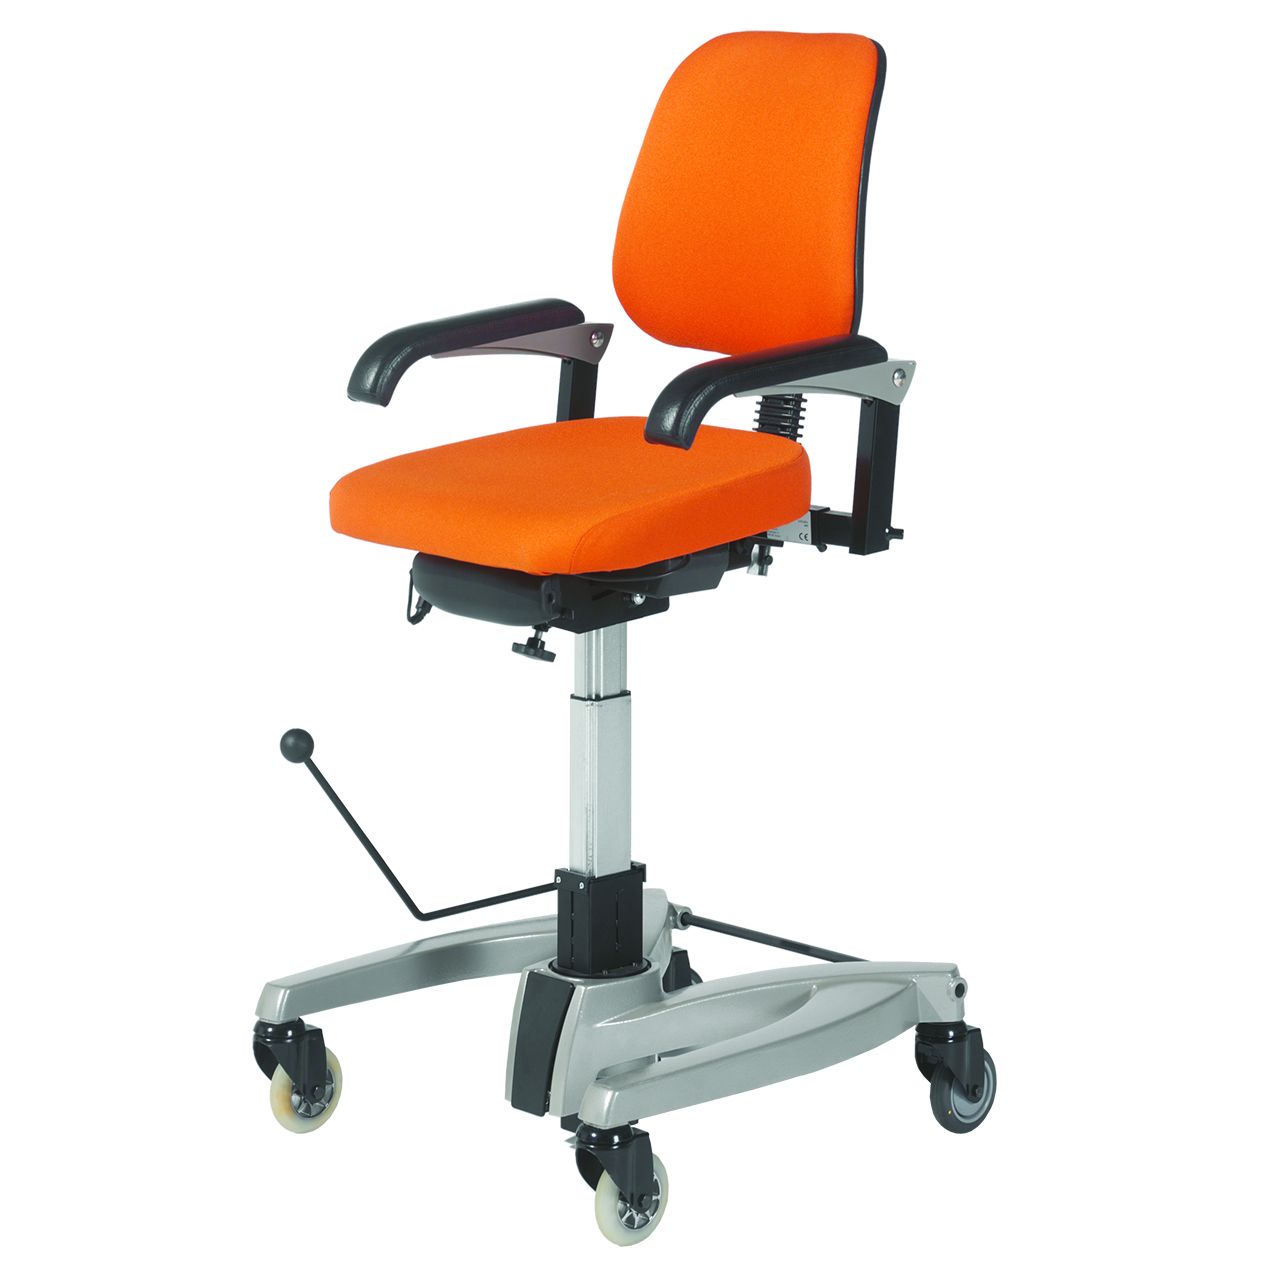 Voornaamwoord Panter Bermad De ergonomische LeTriple Trippelstoel - Health2Work - Health2Work